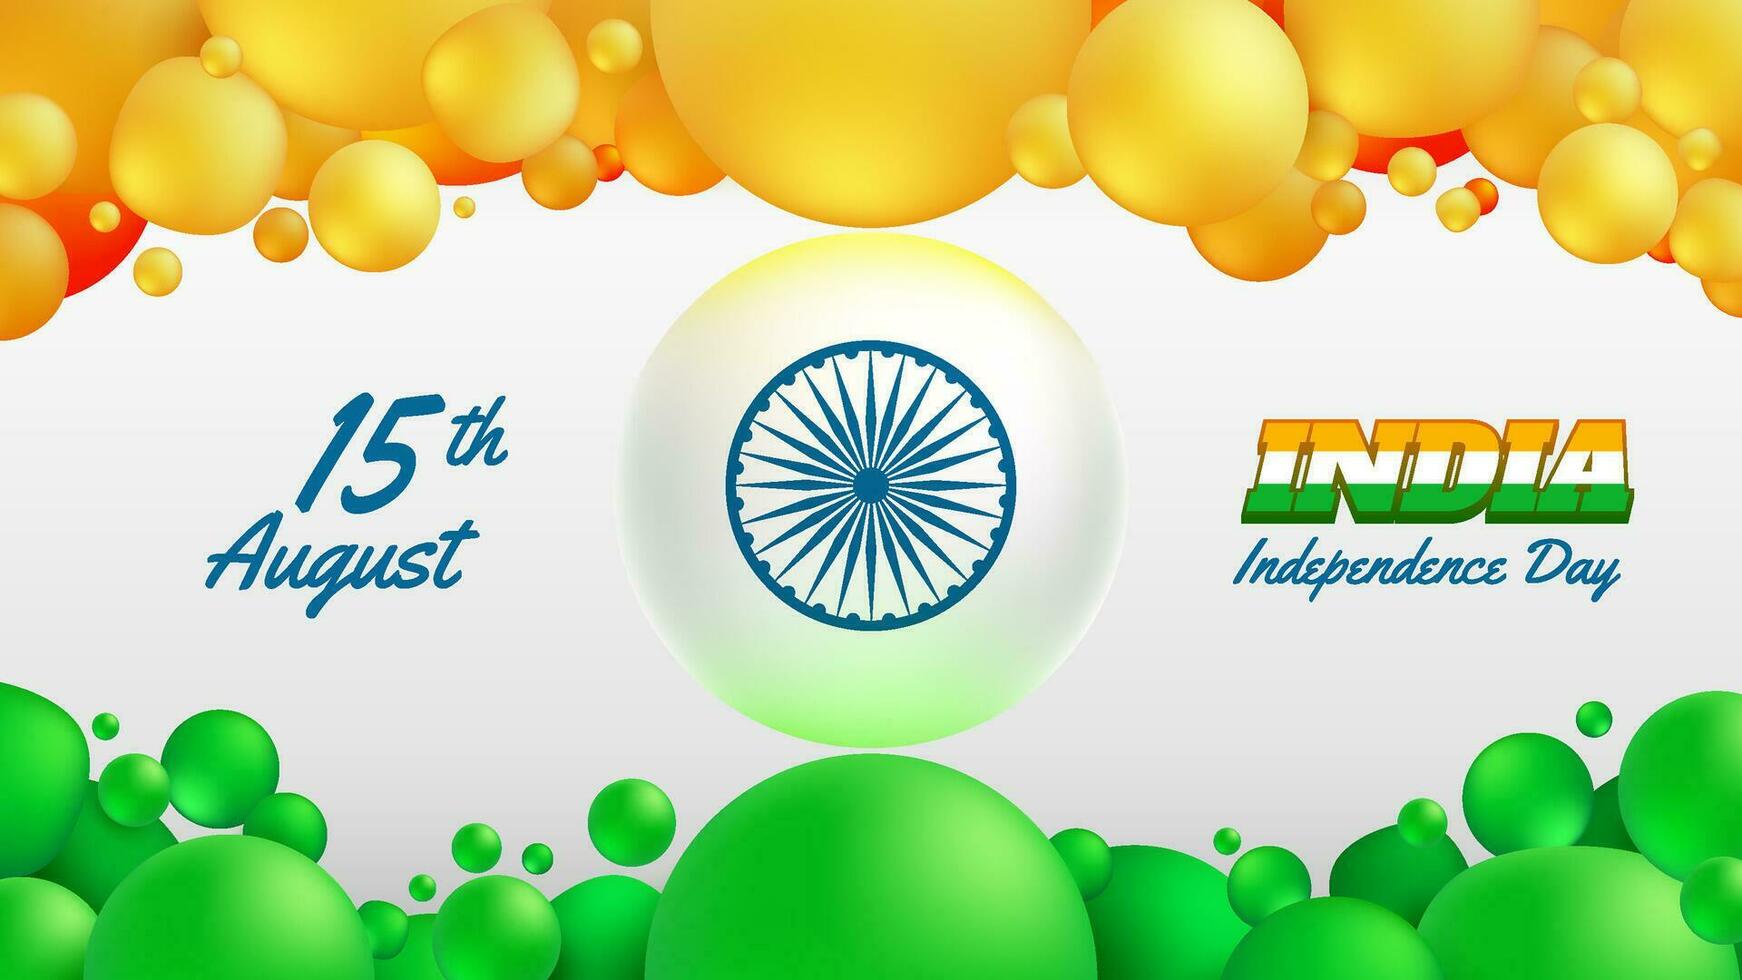 réaliste abstrait Orange et vert des balles comme Inde indépendance journée Contexte vecteur